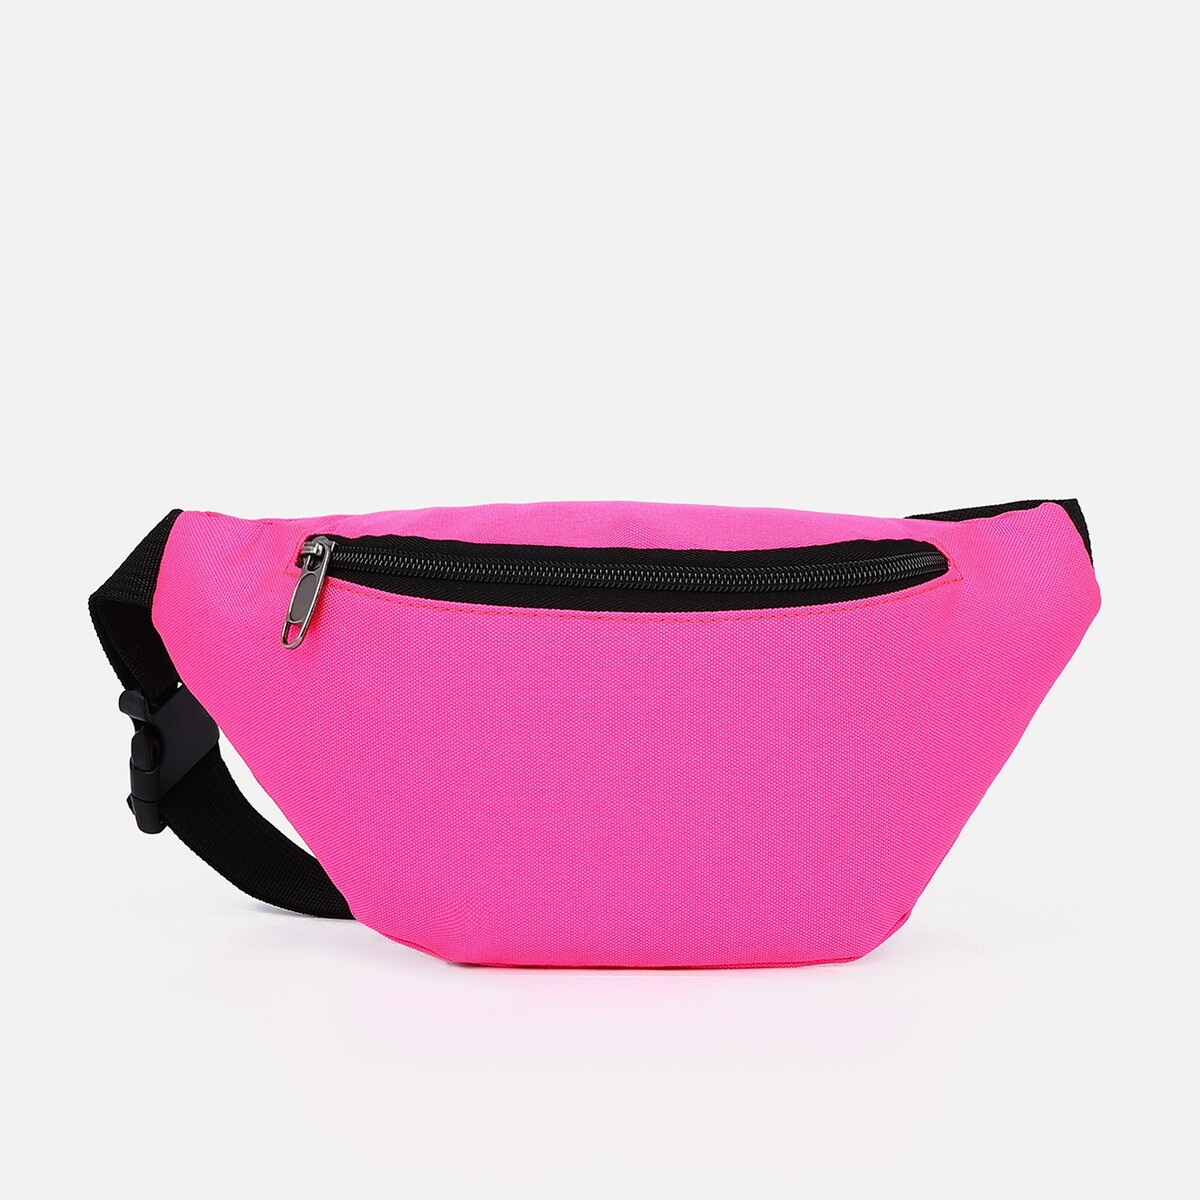 Поясная сумка на молнии, наружный карман, цвет розовый поясная сумка на молнии розовый